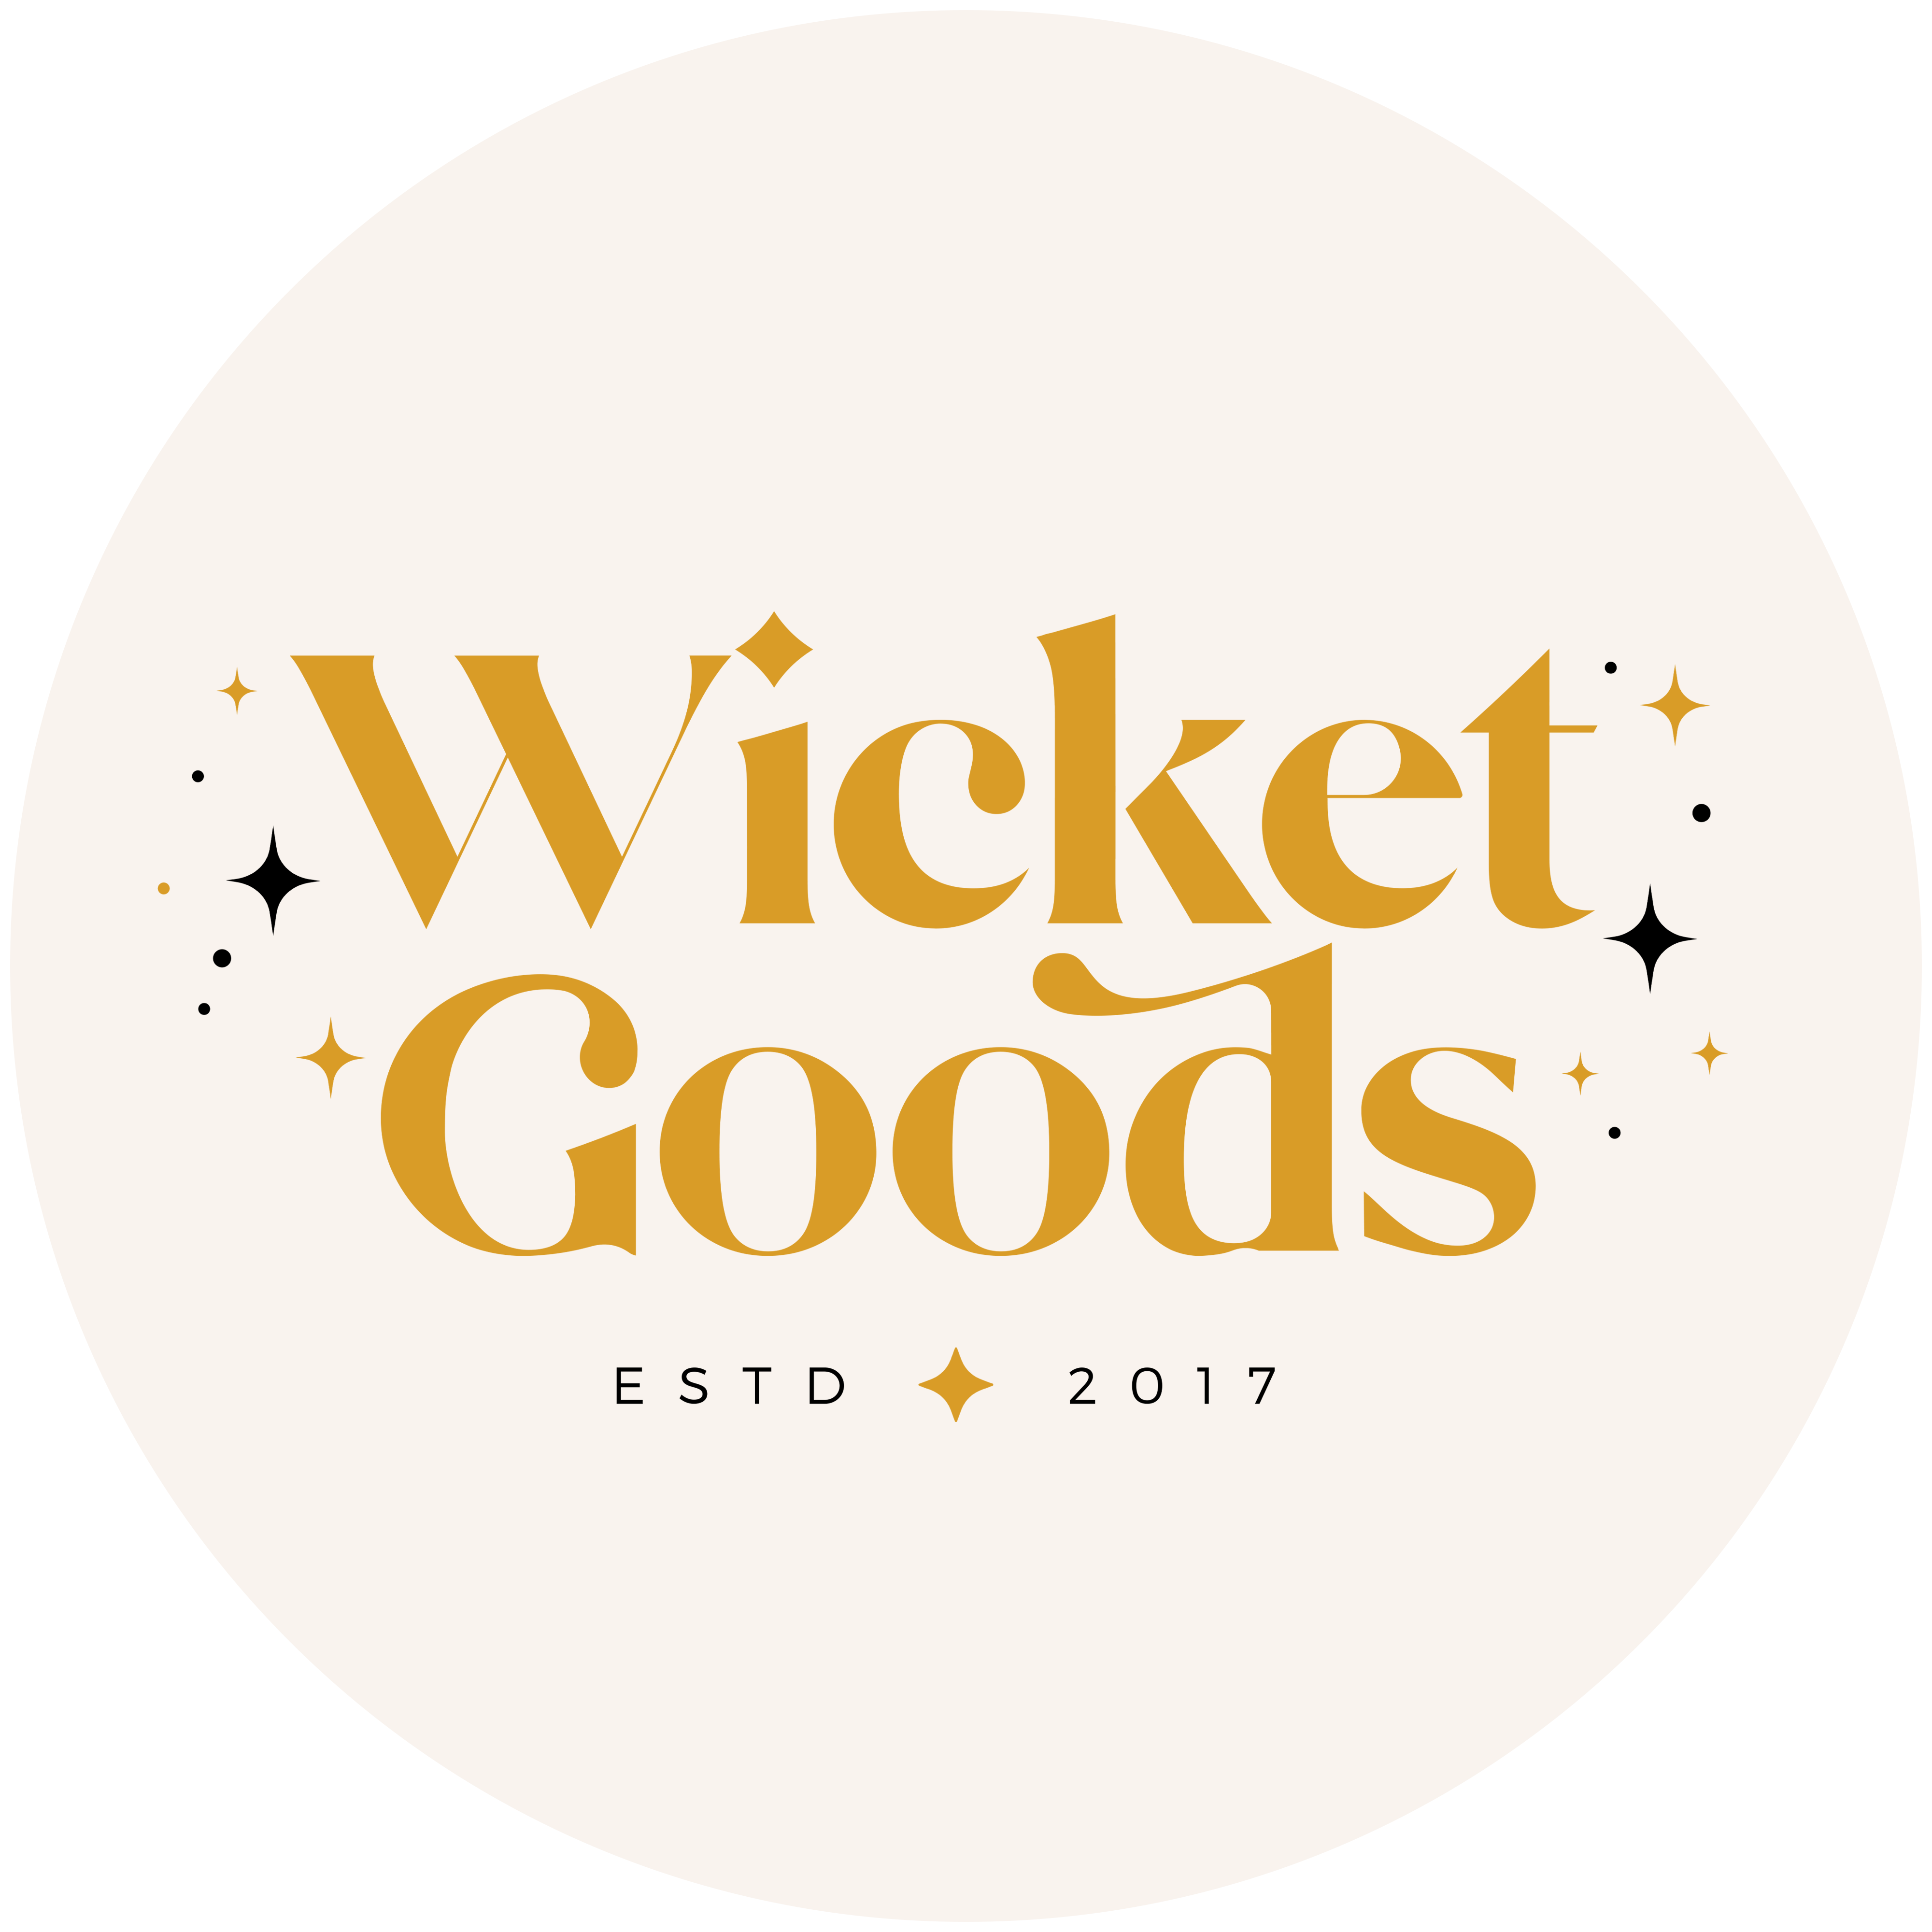 Wicket Goods